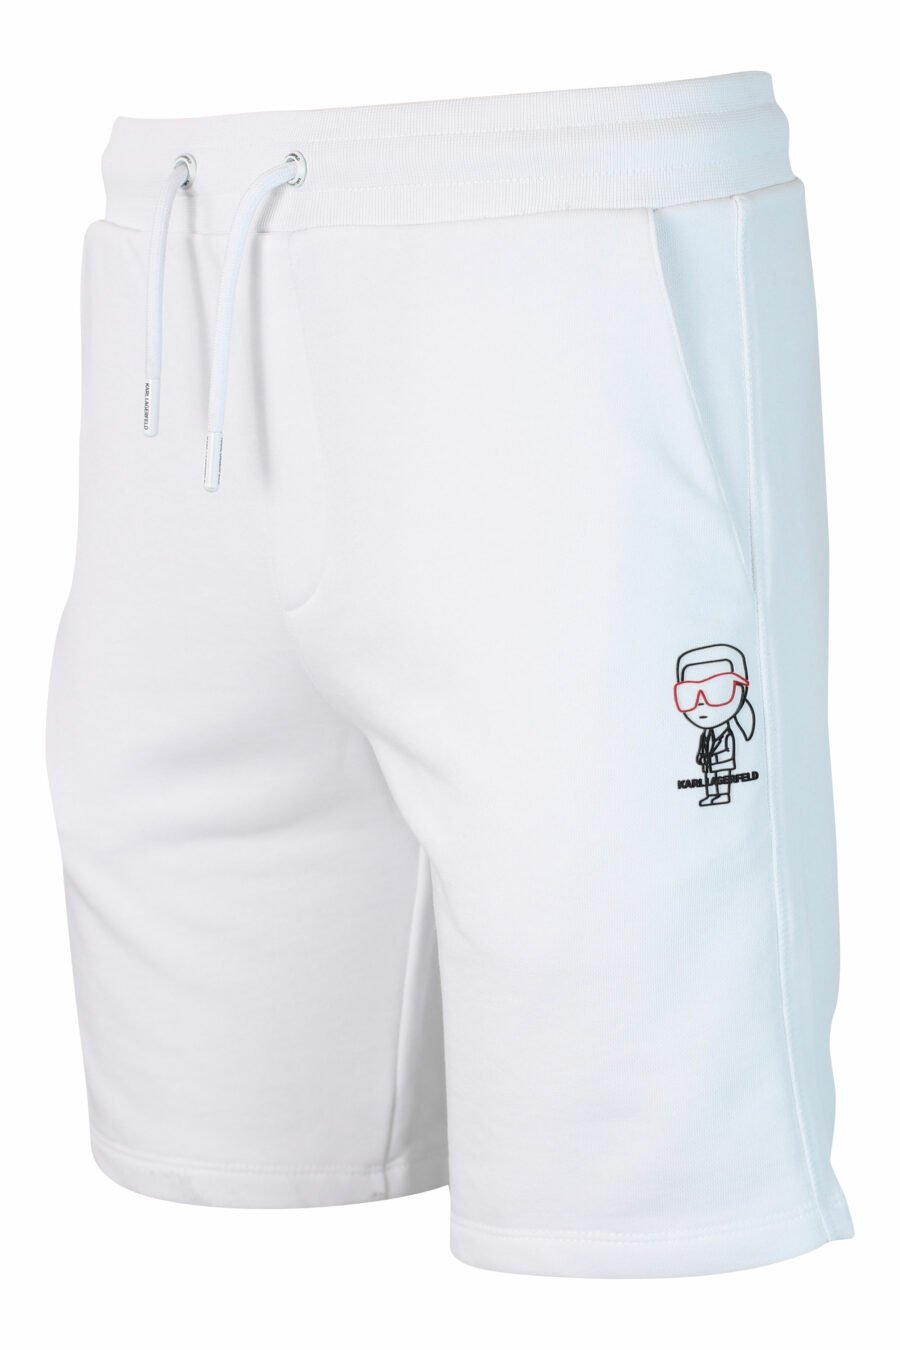 Pantalón de chándal blanco corto con logo en silueta negro - IMG 9898 1